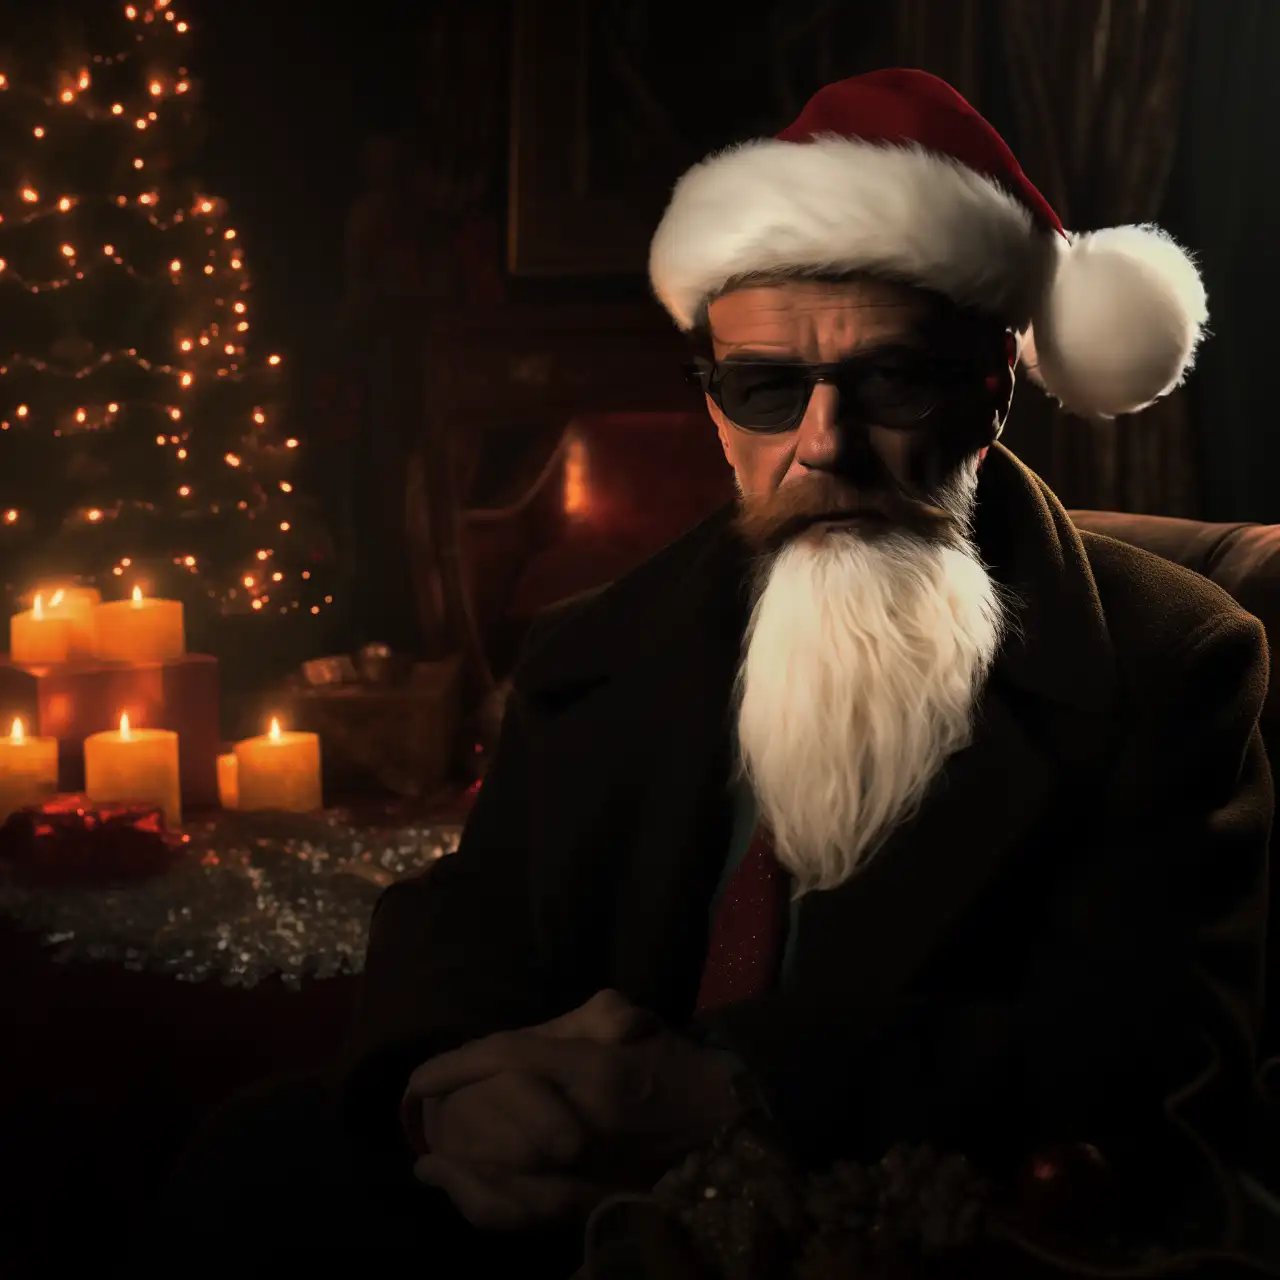 Mann mit Weihnachtsmütze und Sonnenbrille für Bild KI-Weihnachtskalender, KI-Adventskalender bzw. KI-Kalender